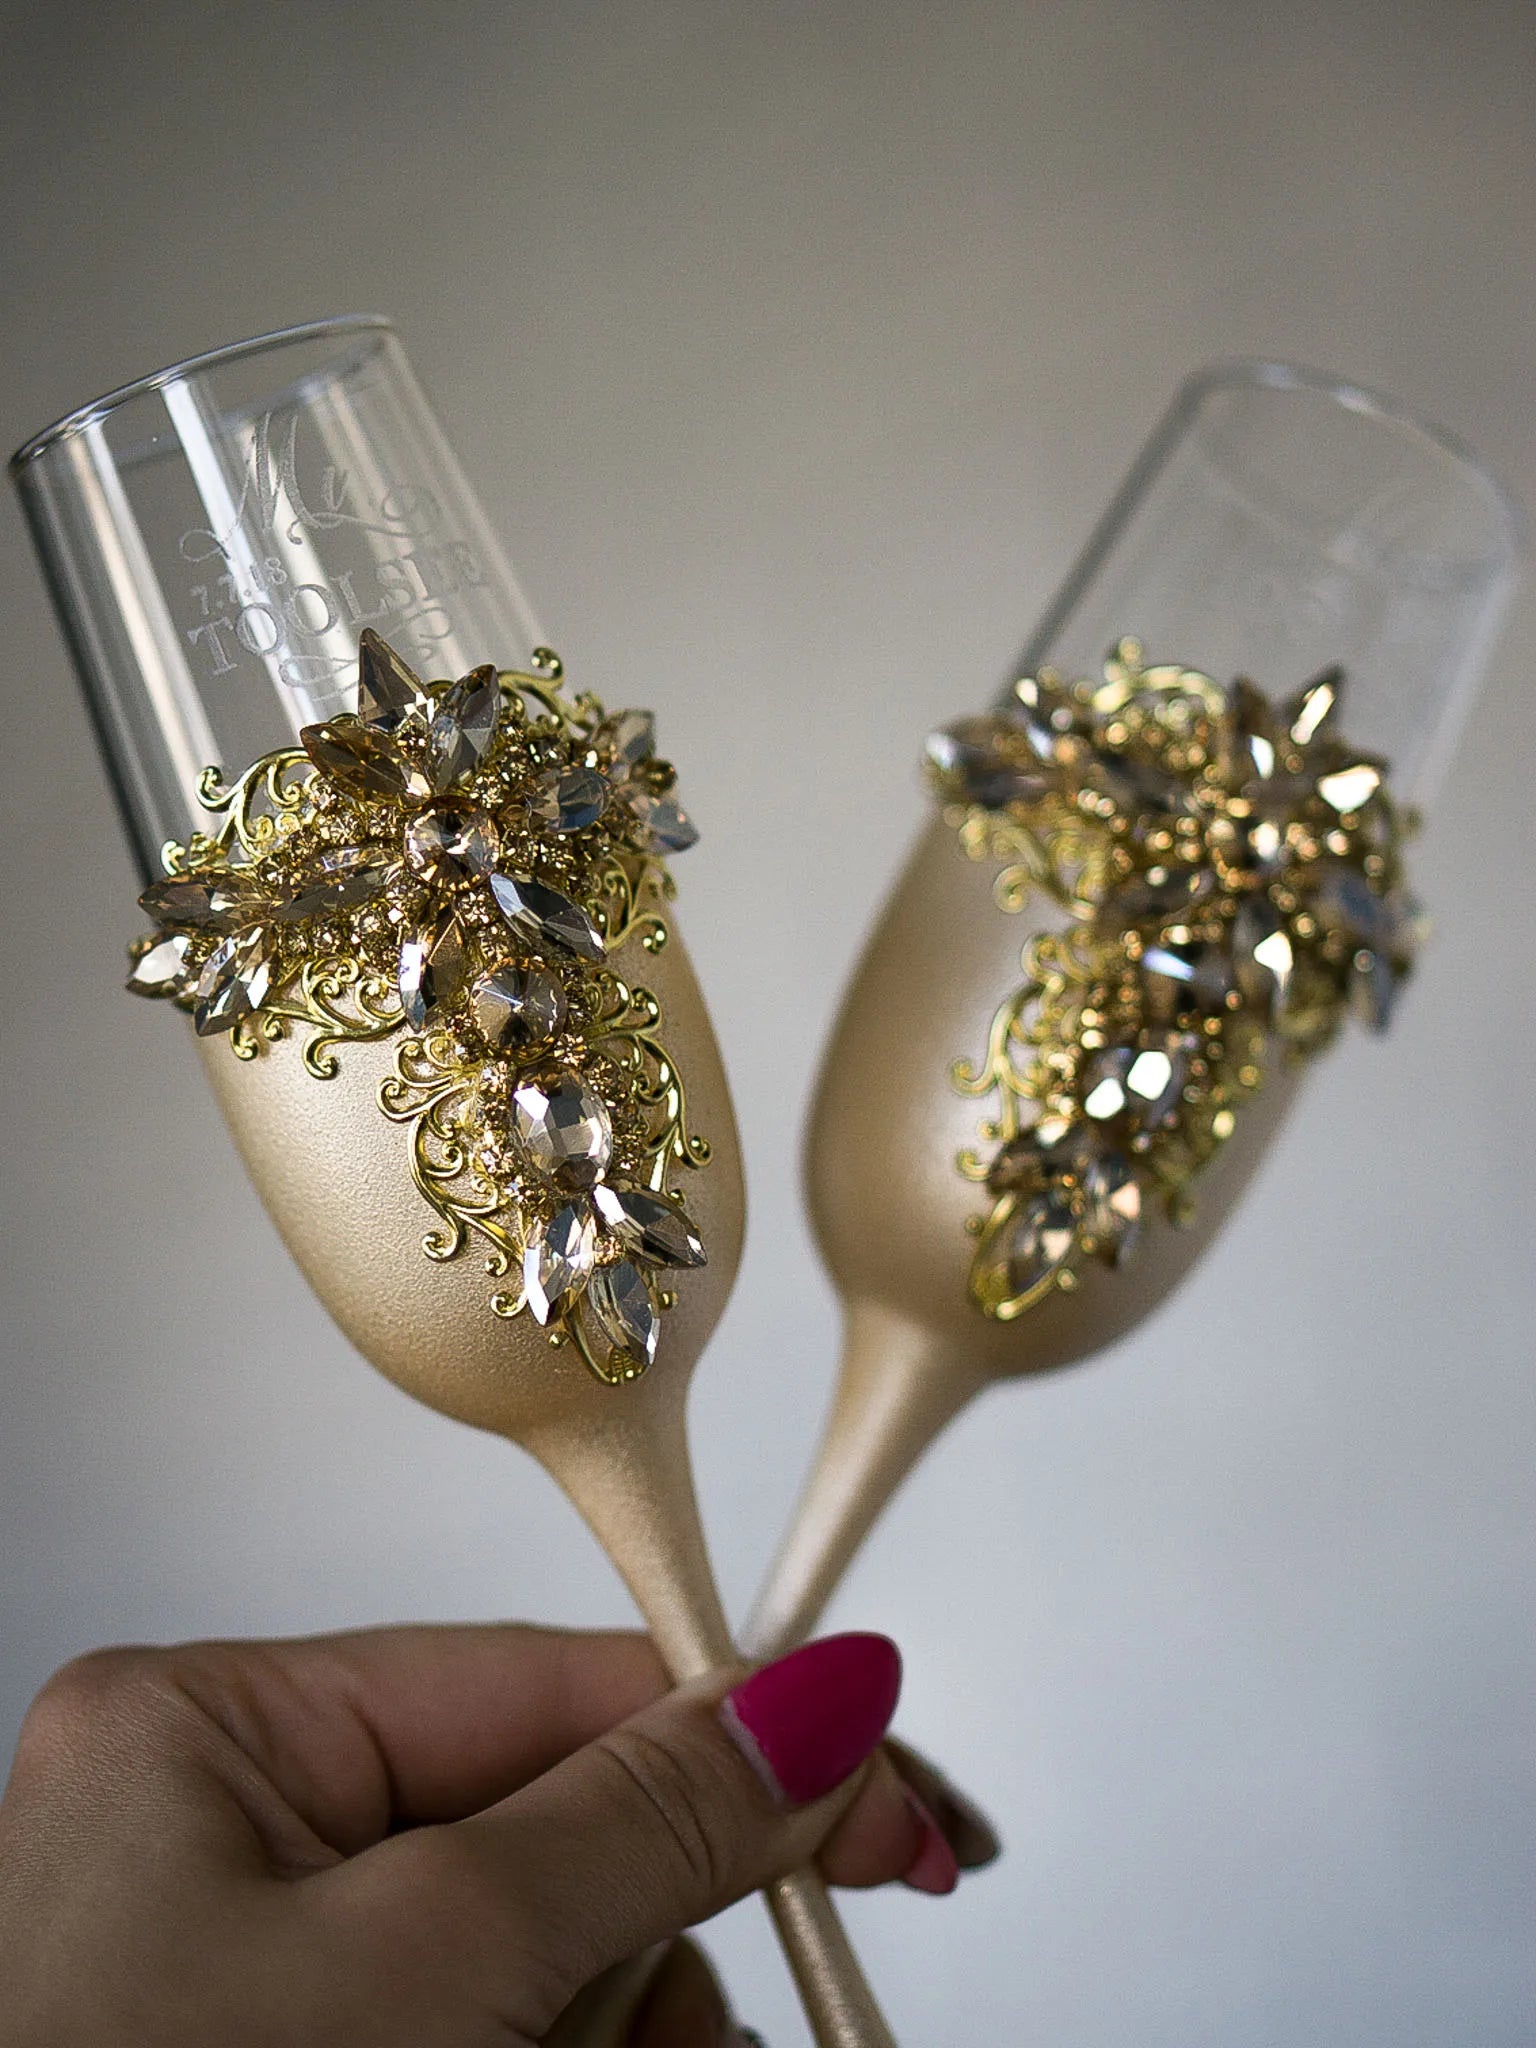 Crystal-adorned champagne flutes